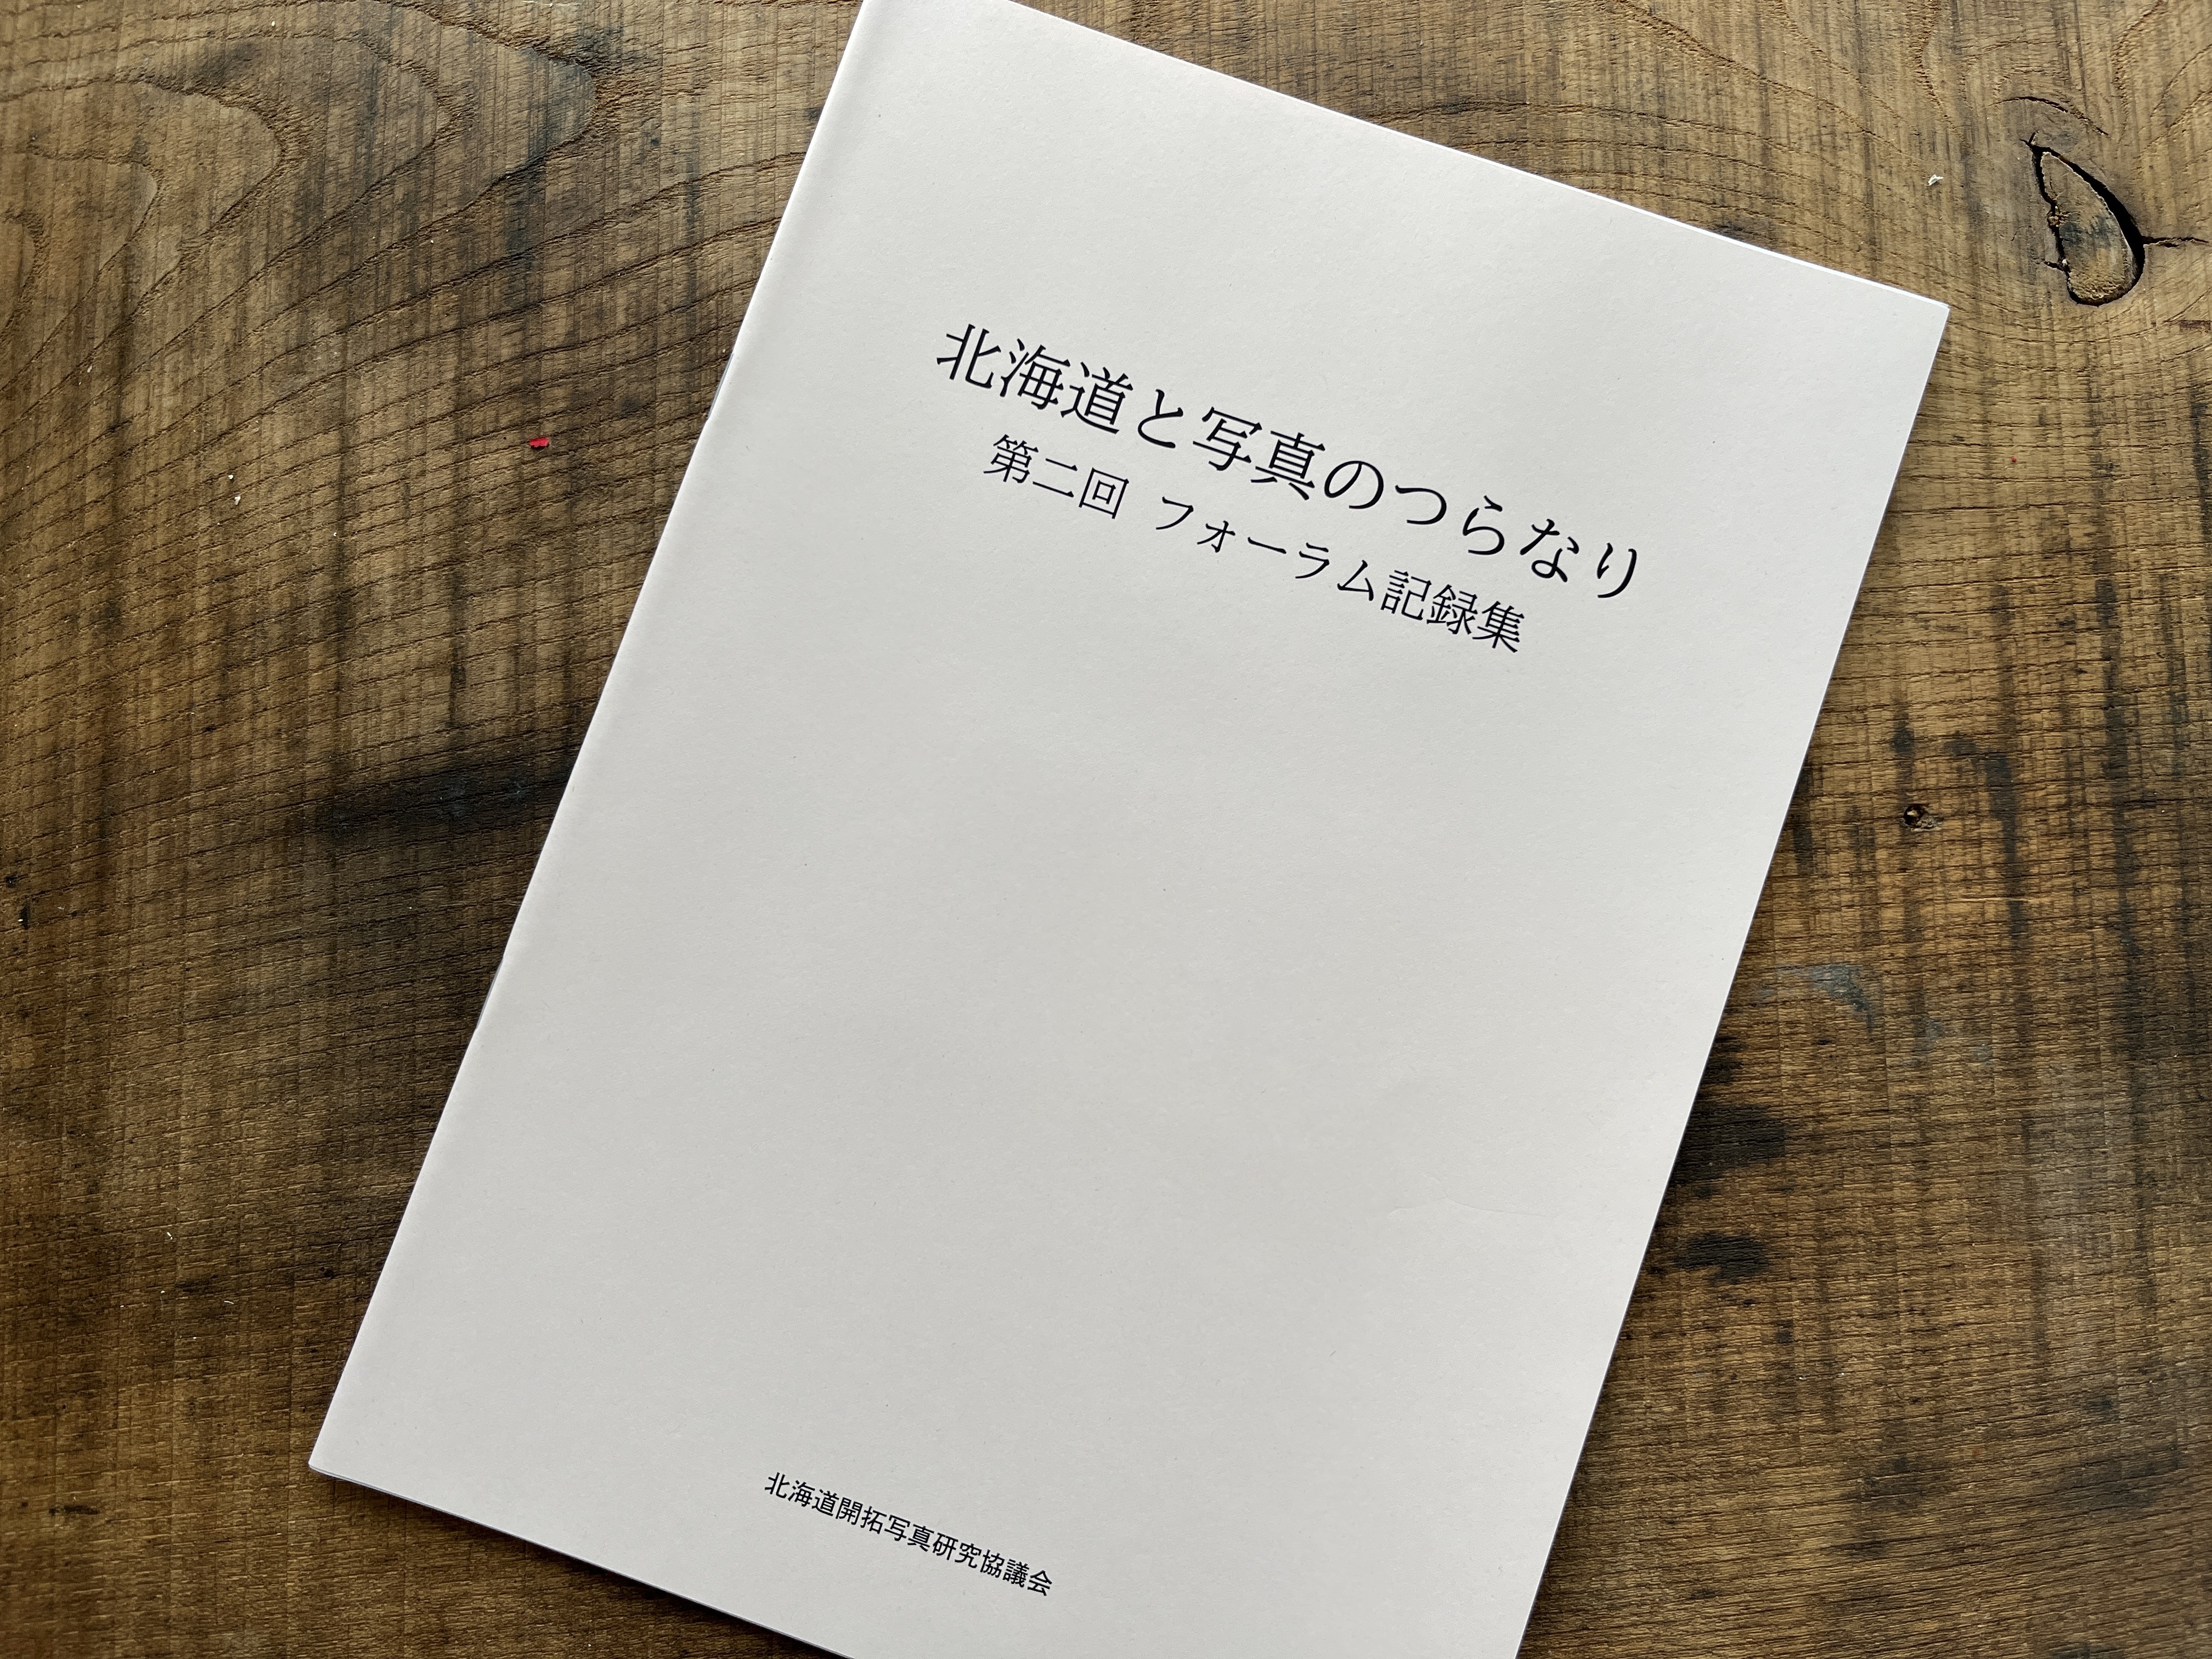 北海道開拓写真研究協議会「第二回フォーラム記録集」を配布しております